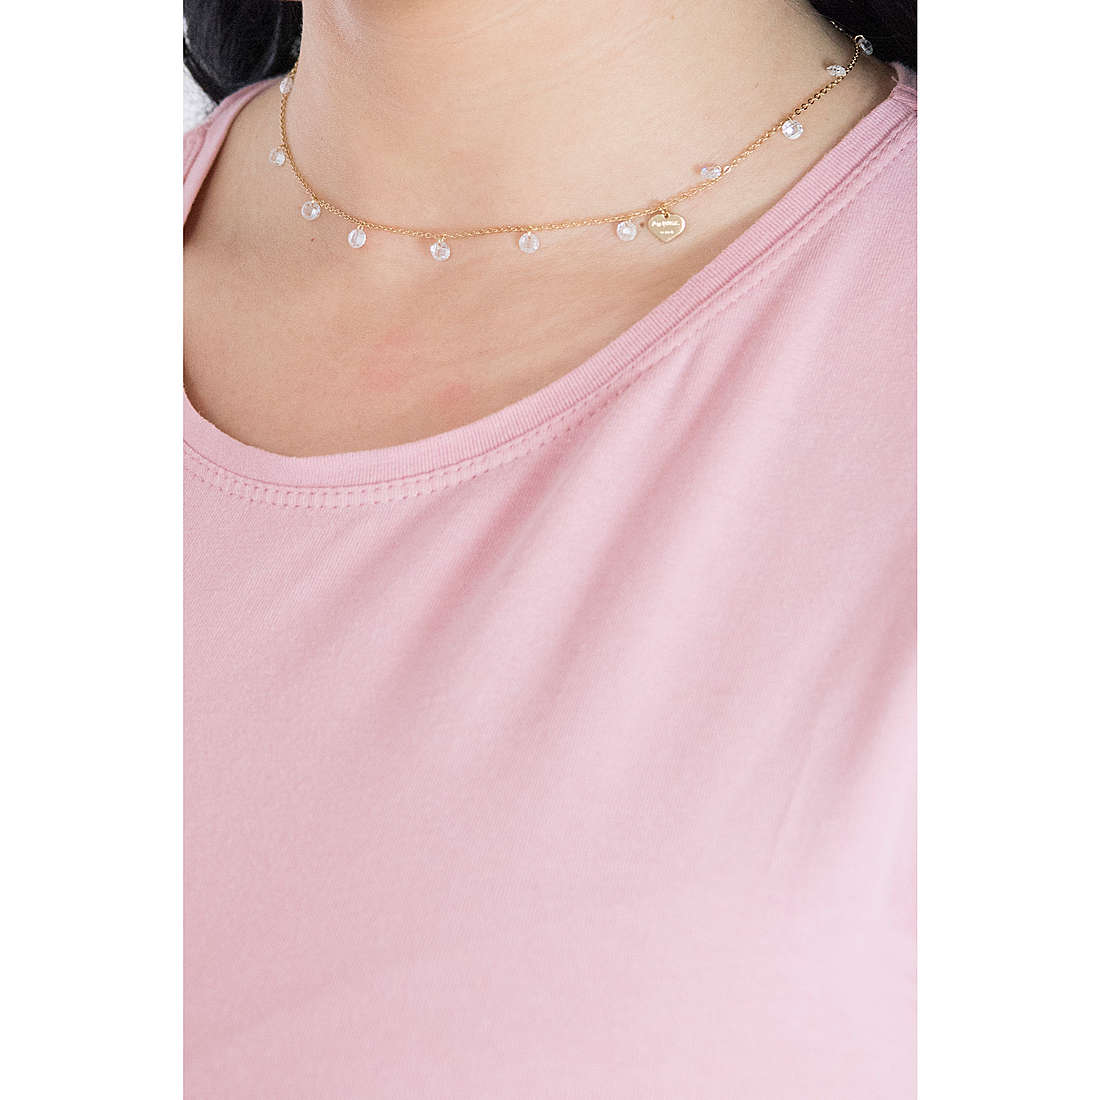 Rebecca necklaces Lucciole woman SLCKOB06 wearing